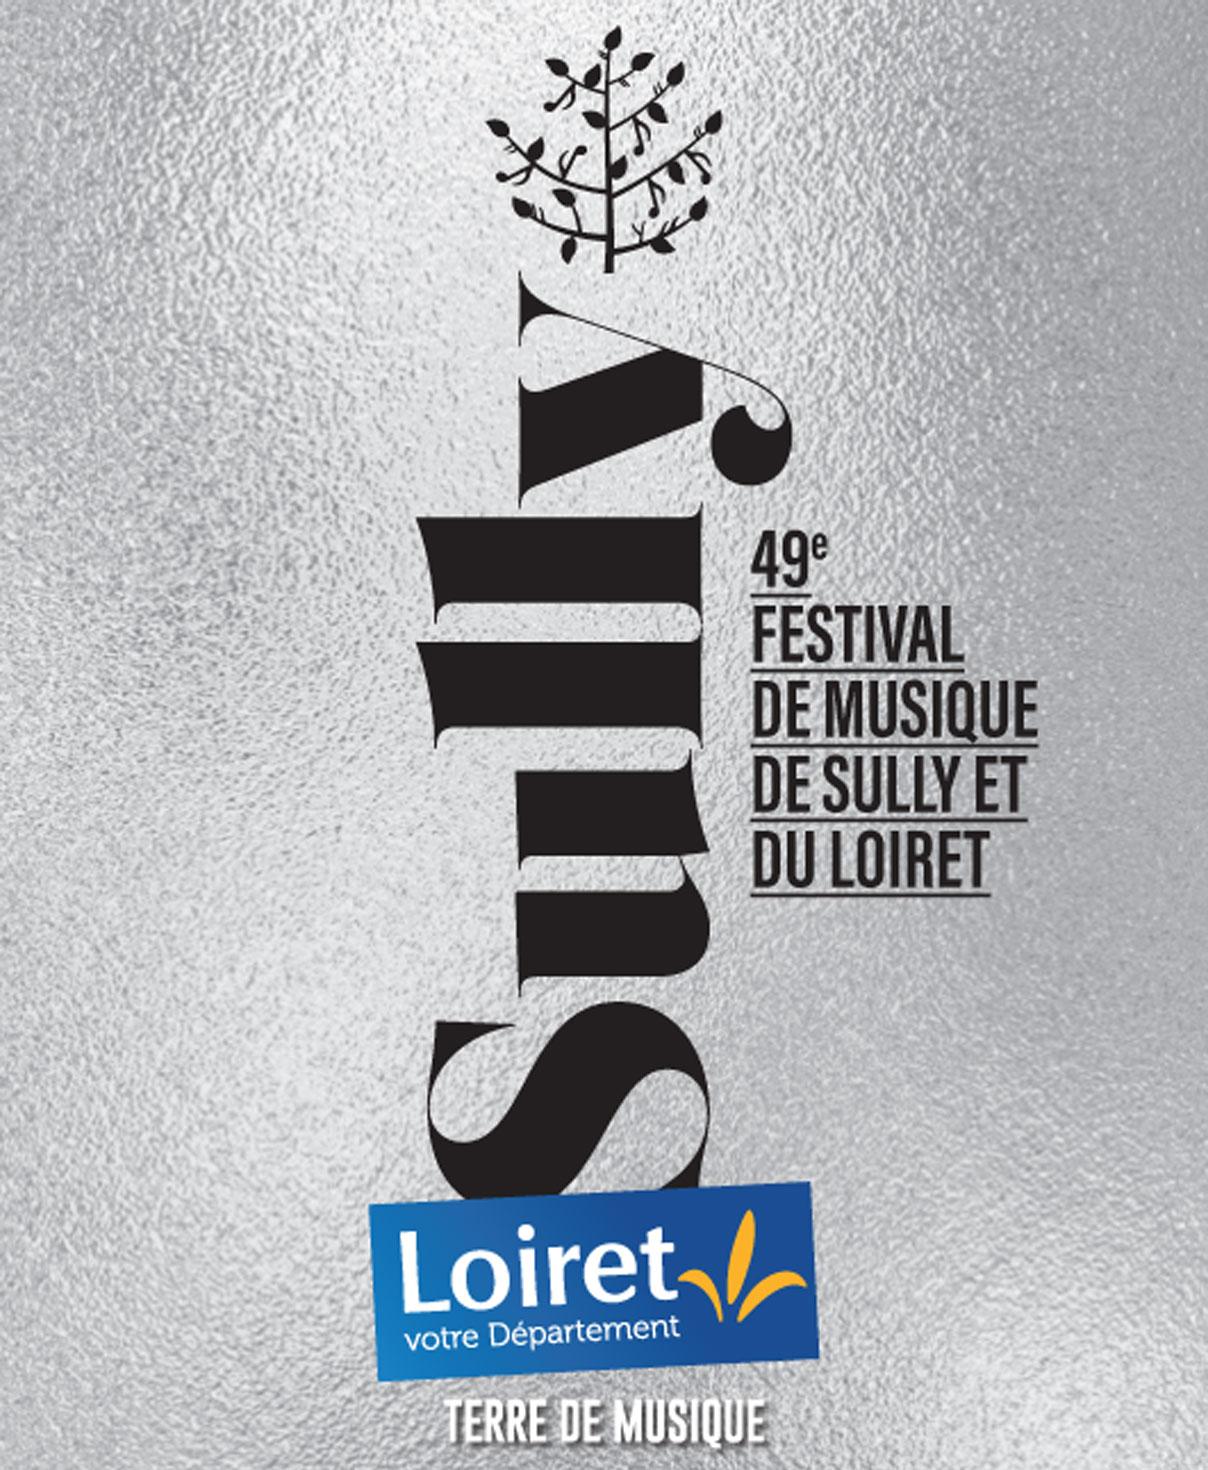 Le Festival de musique de Sully et du Loiret, c’est parti ! Visuel 2022